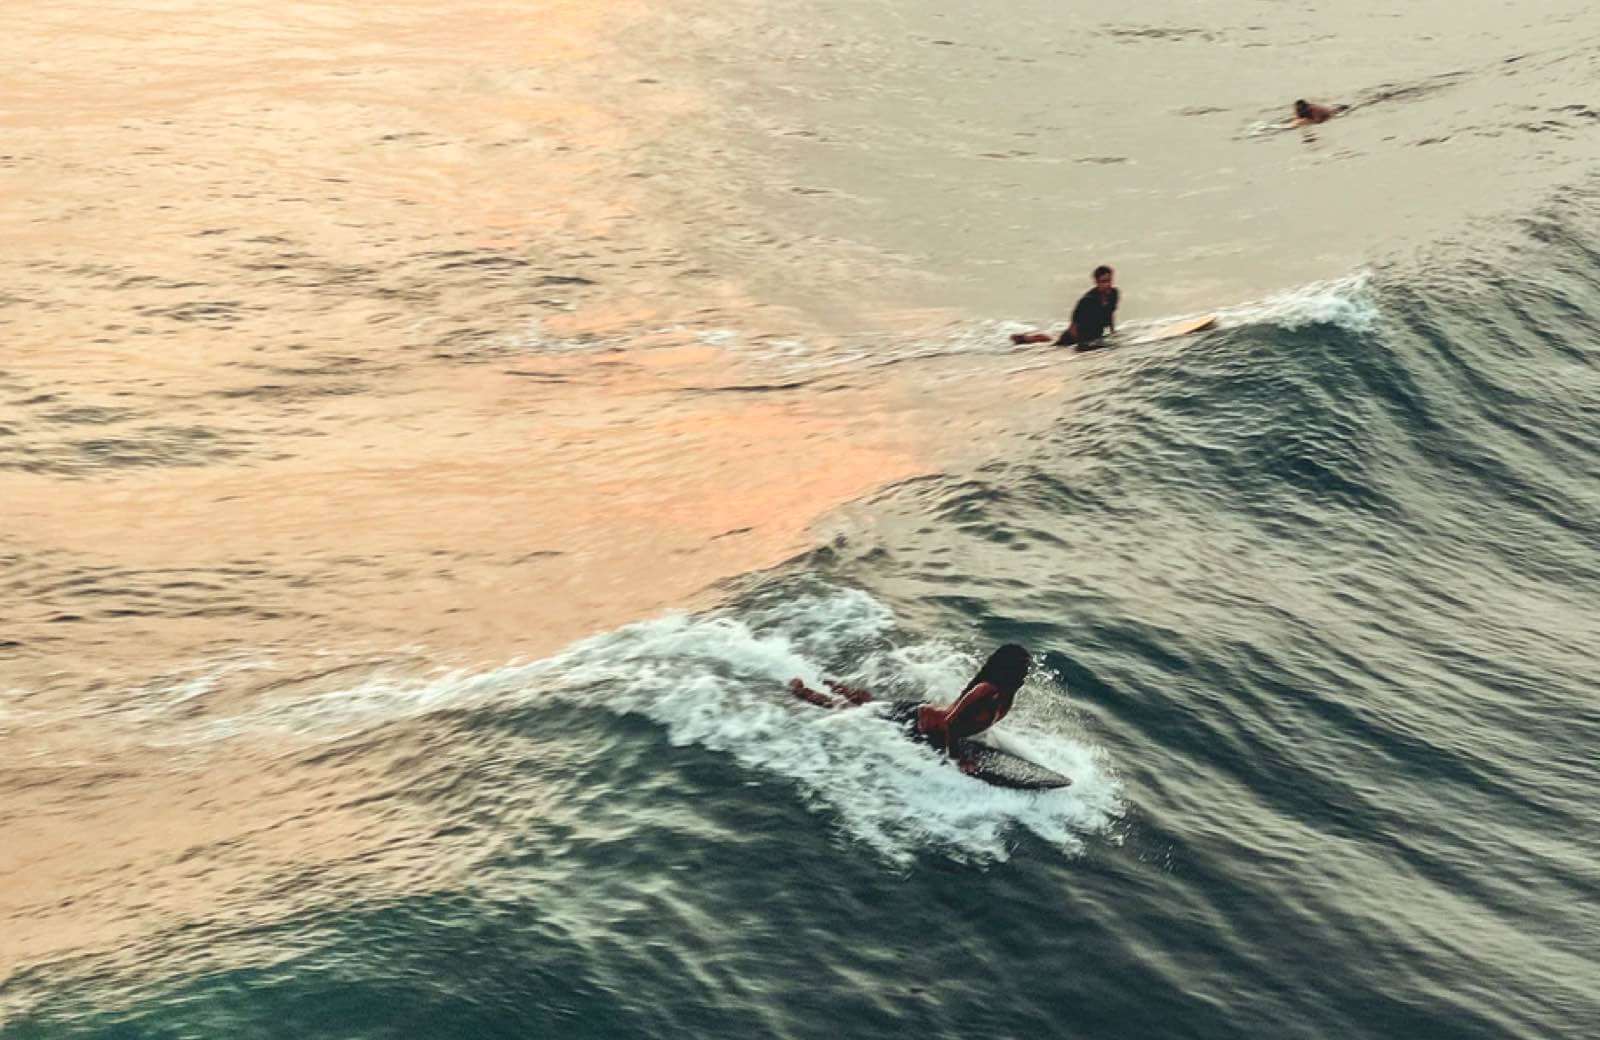 Surfers battling for the peak